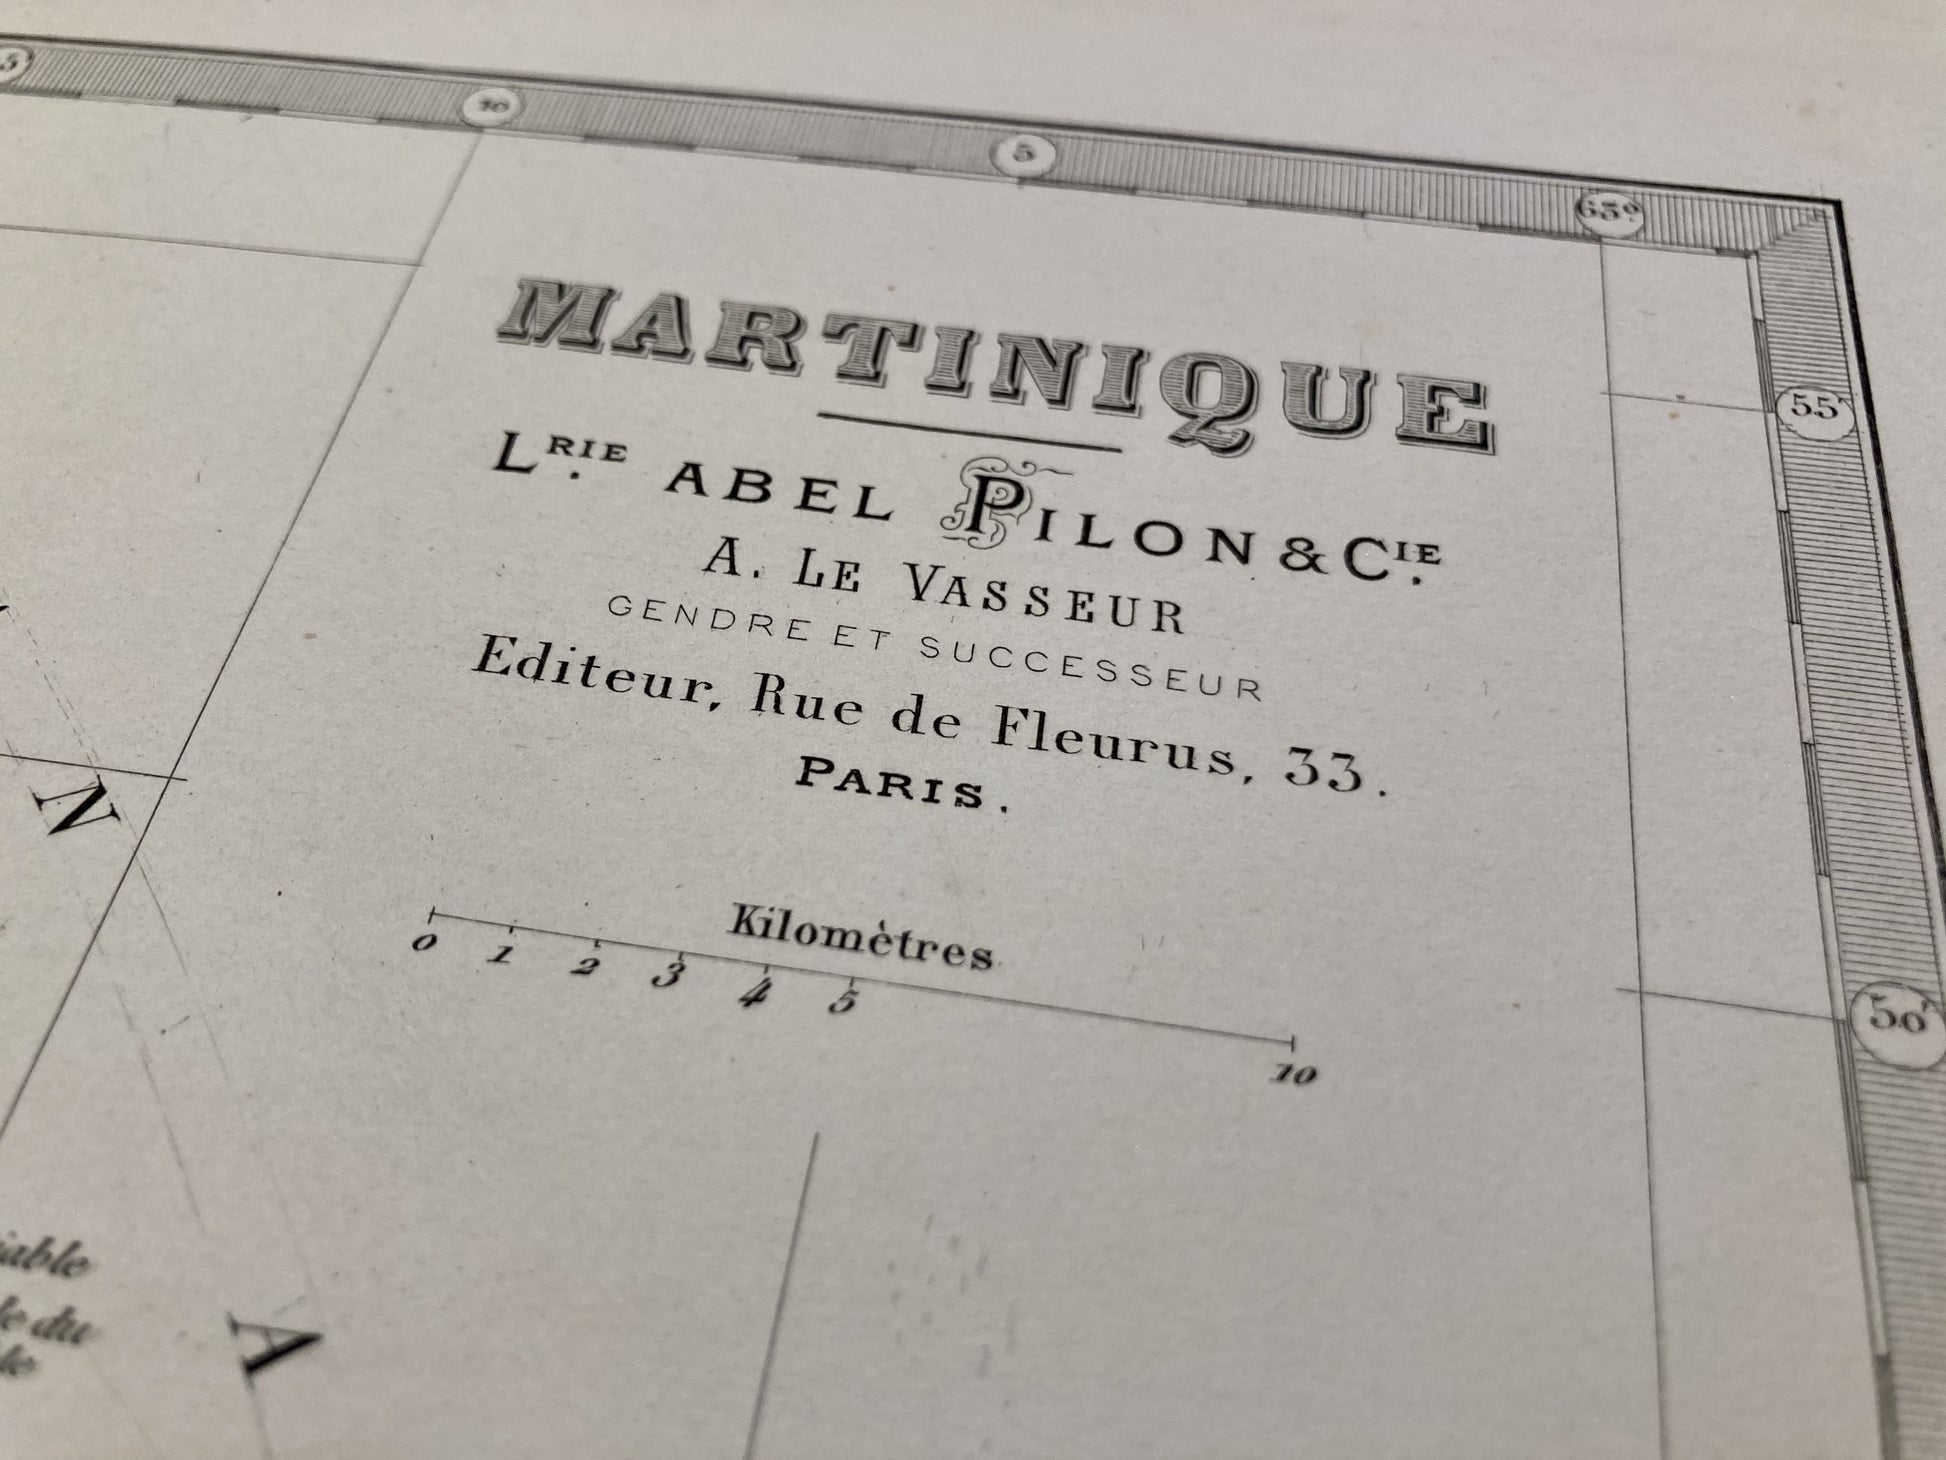 Cartouche de la carte ancienne de la Martinique par Abel-Pilon